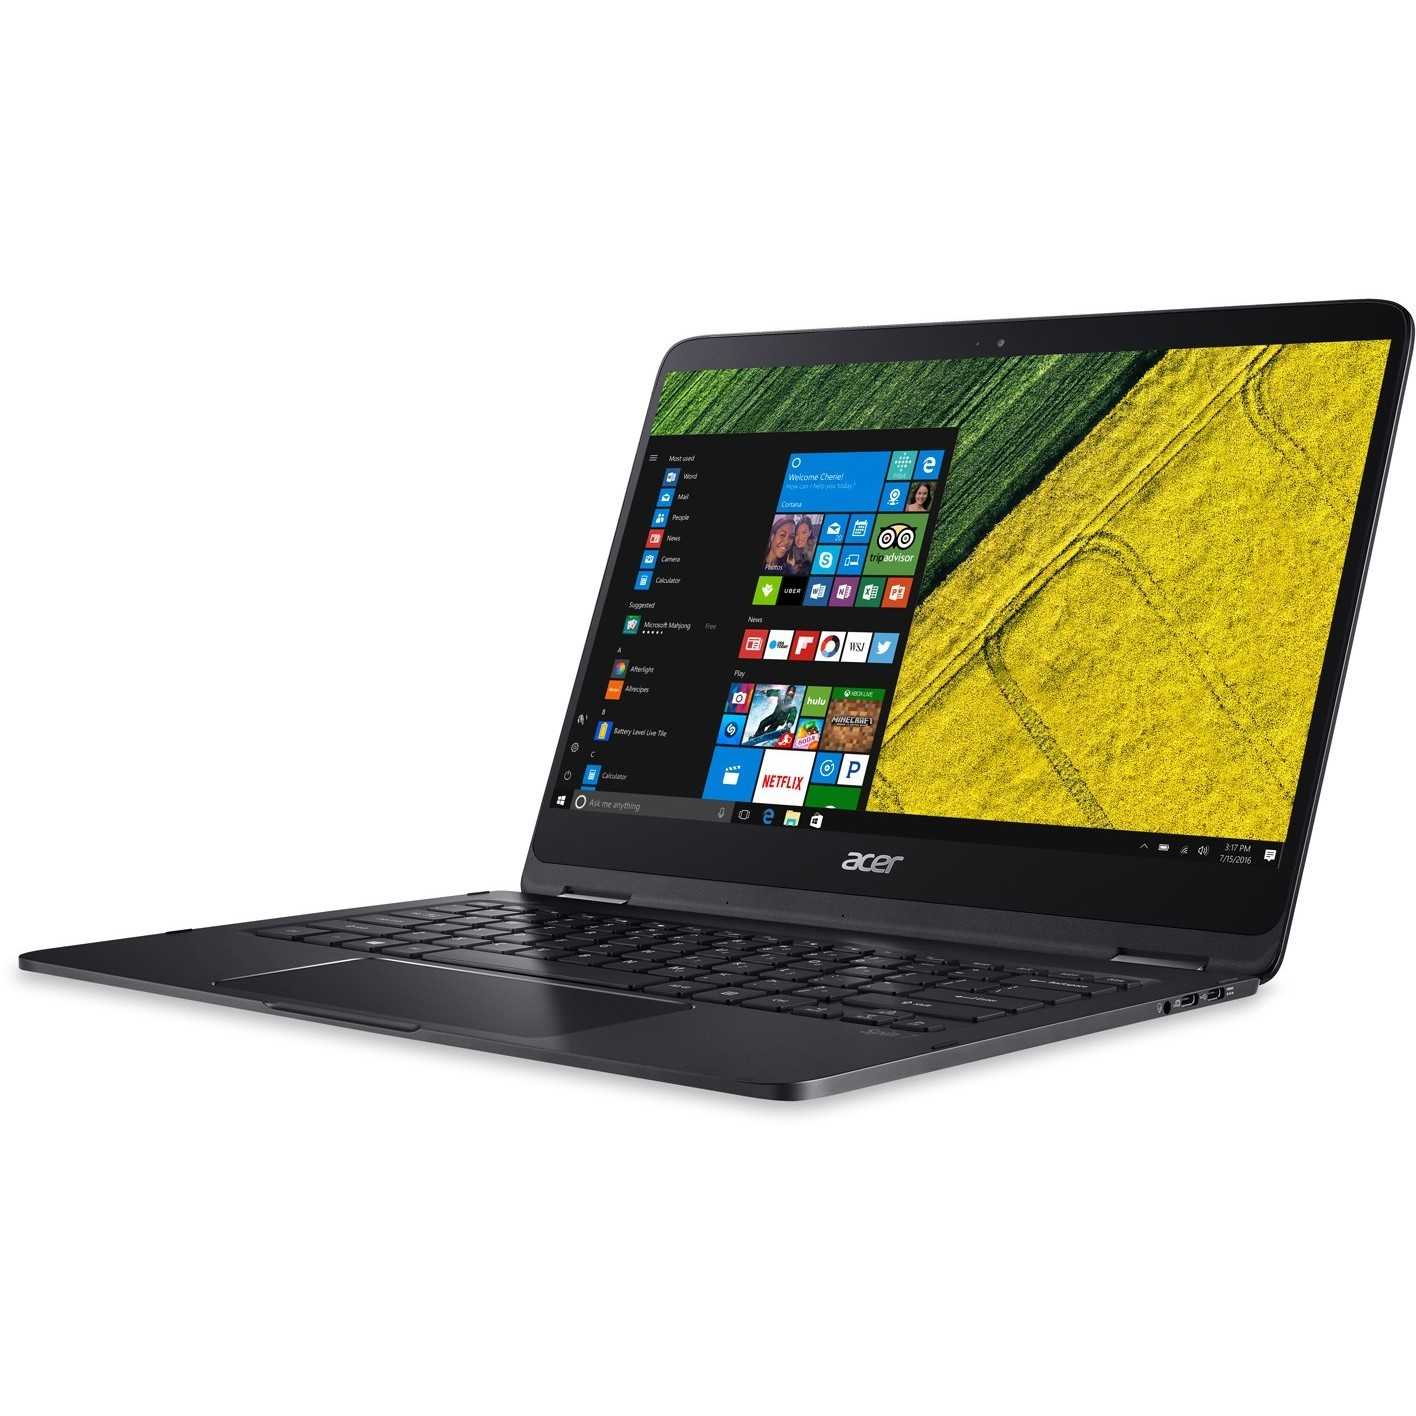 Ноутбук Acer Spin 7 - подробные характеристики обзоры видео фото Цены в интернет-магазинах где можно купить ноутбук Acer Spin 7